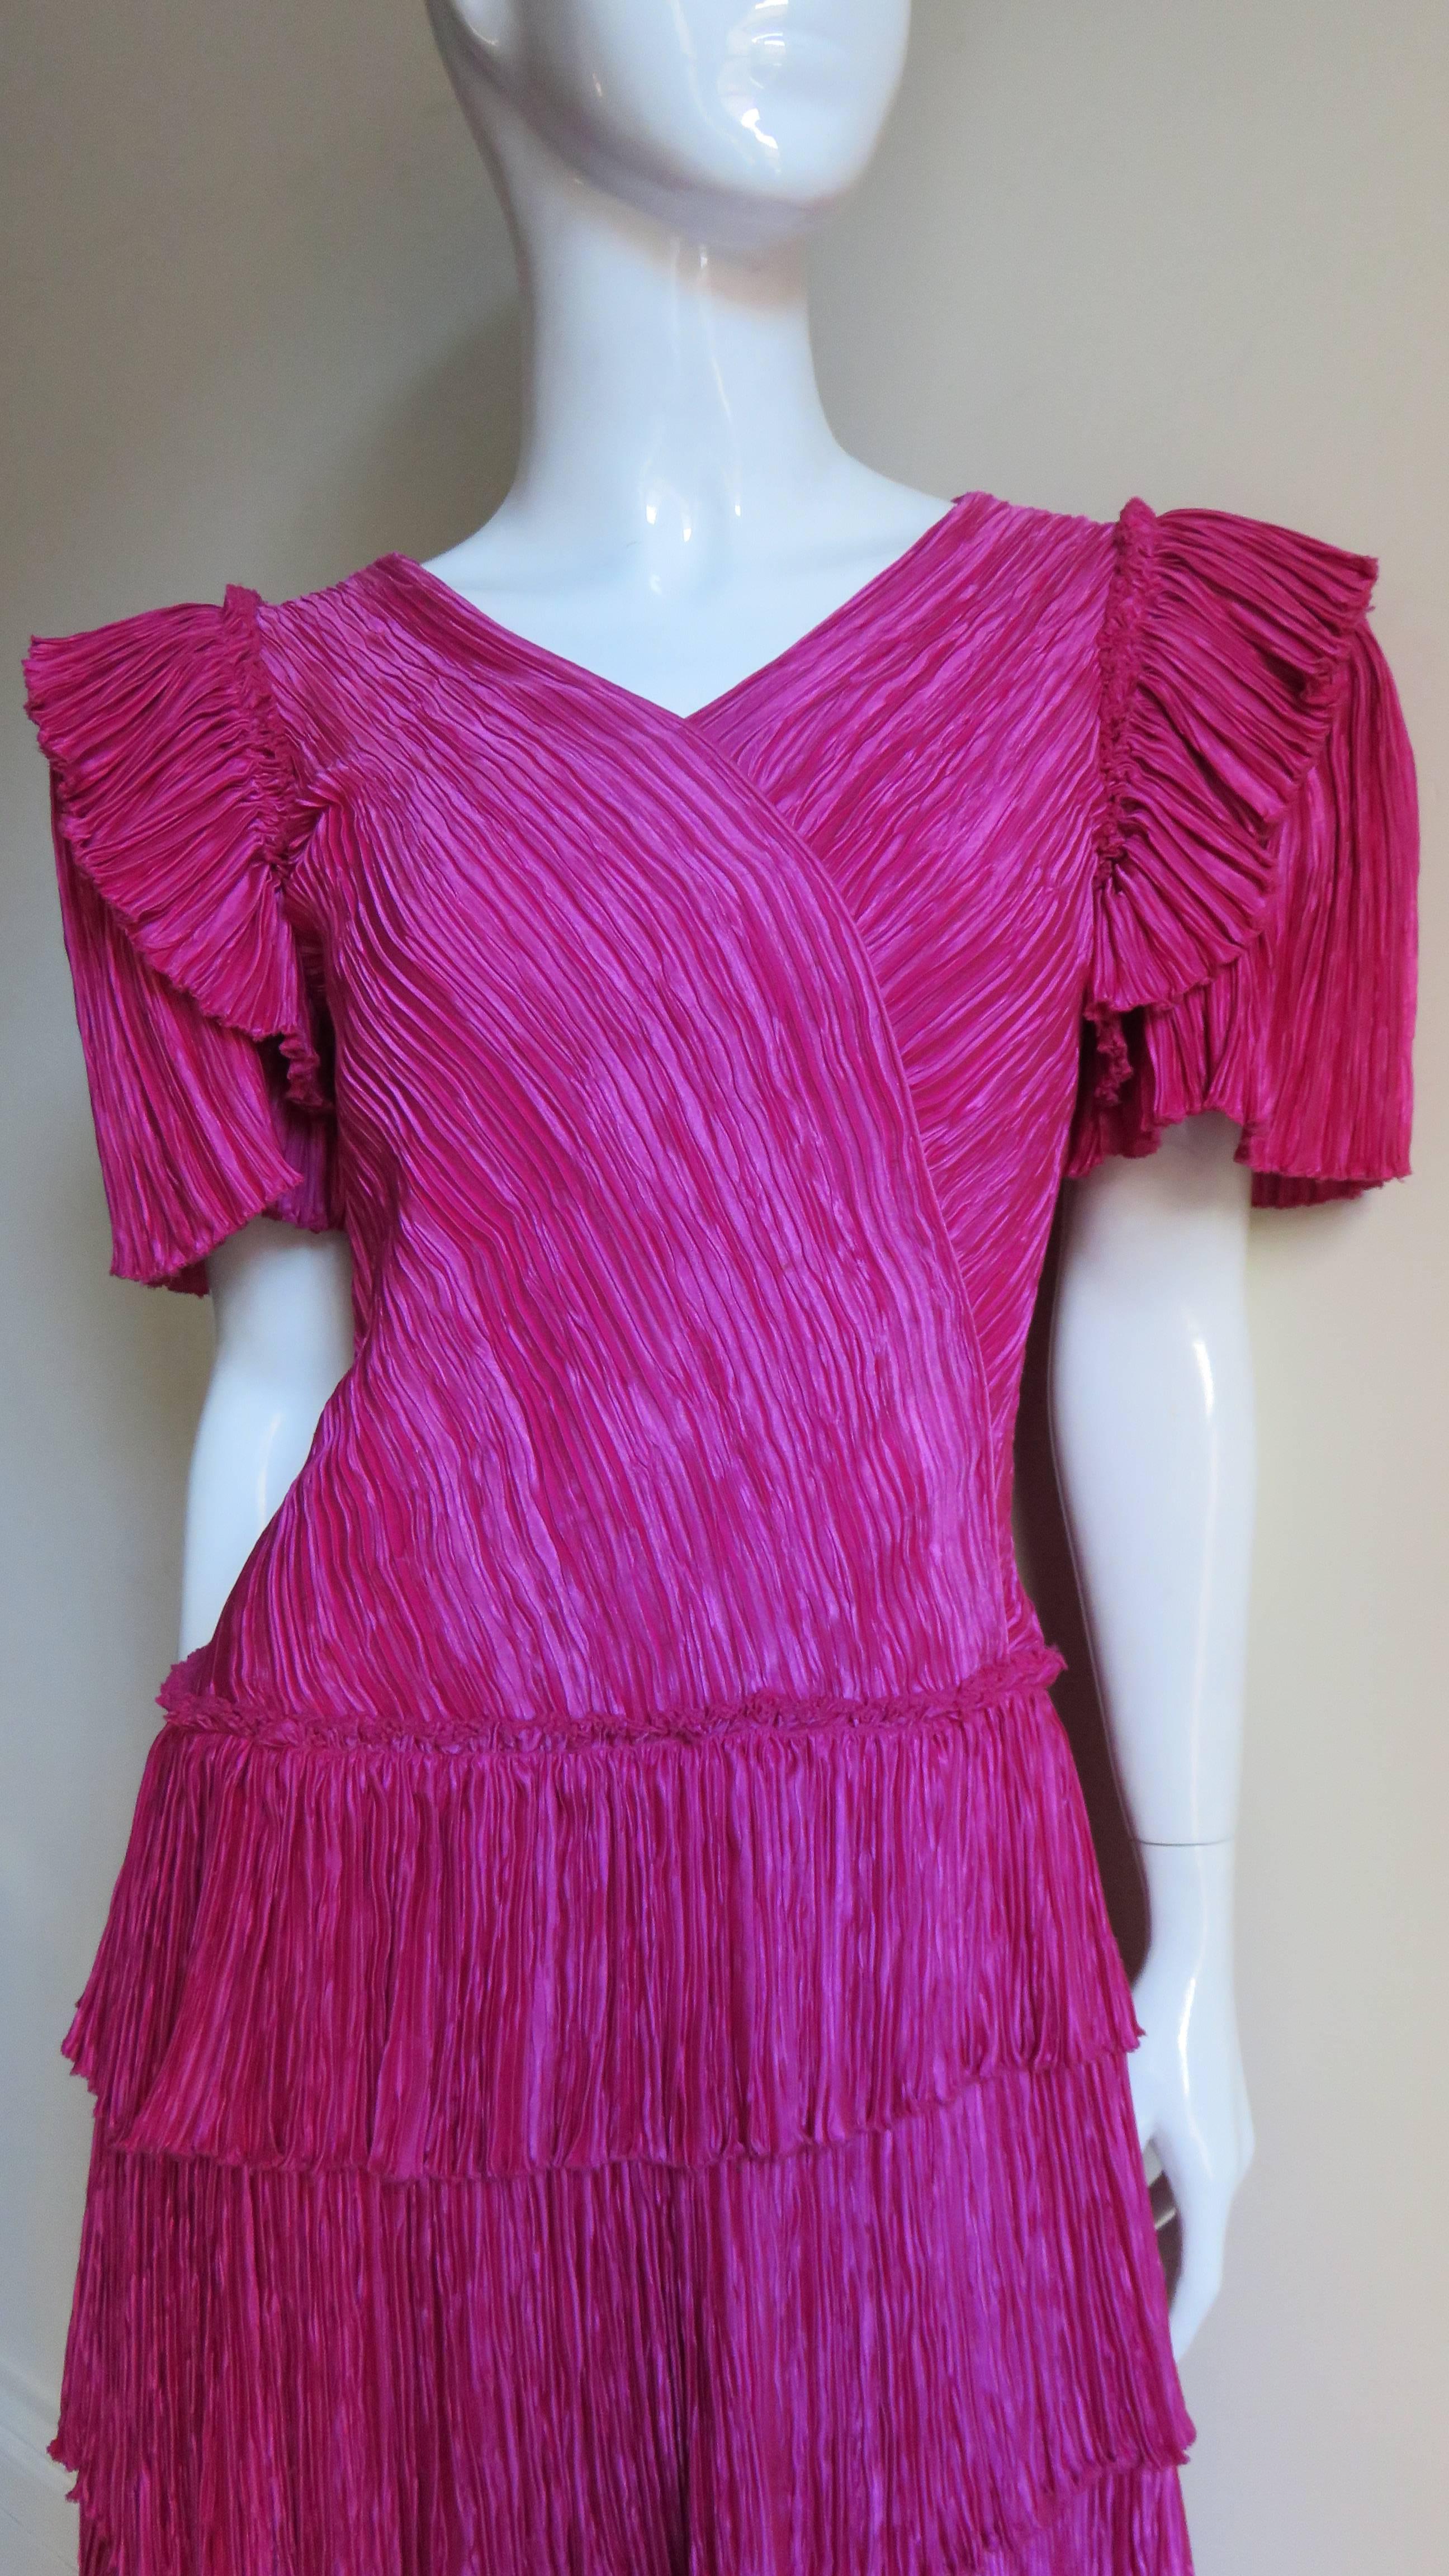 Ein hübsches rosafarbenes Kleid aus Seide mit Mikrofalten aus der Couture-Linie von Mary McFadden.  Es hat einen V-Ausschnitt, einen Wickeleffekt über dem Mieder vorne und hinten und die kurzen Ärmel haben eine Rüsche an den Schultern.  Der